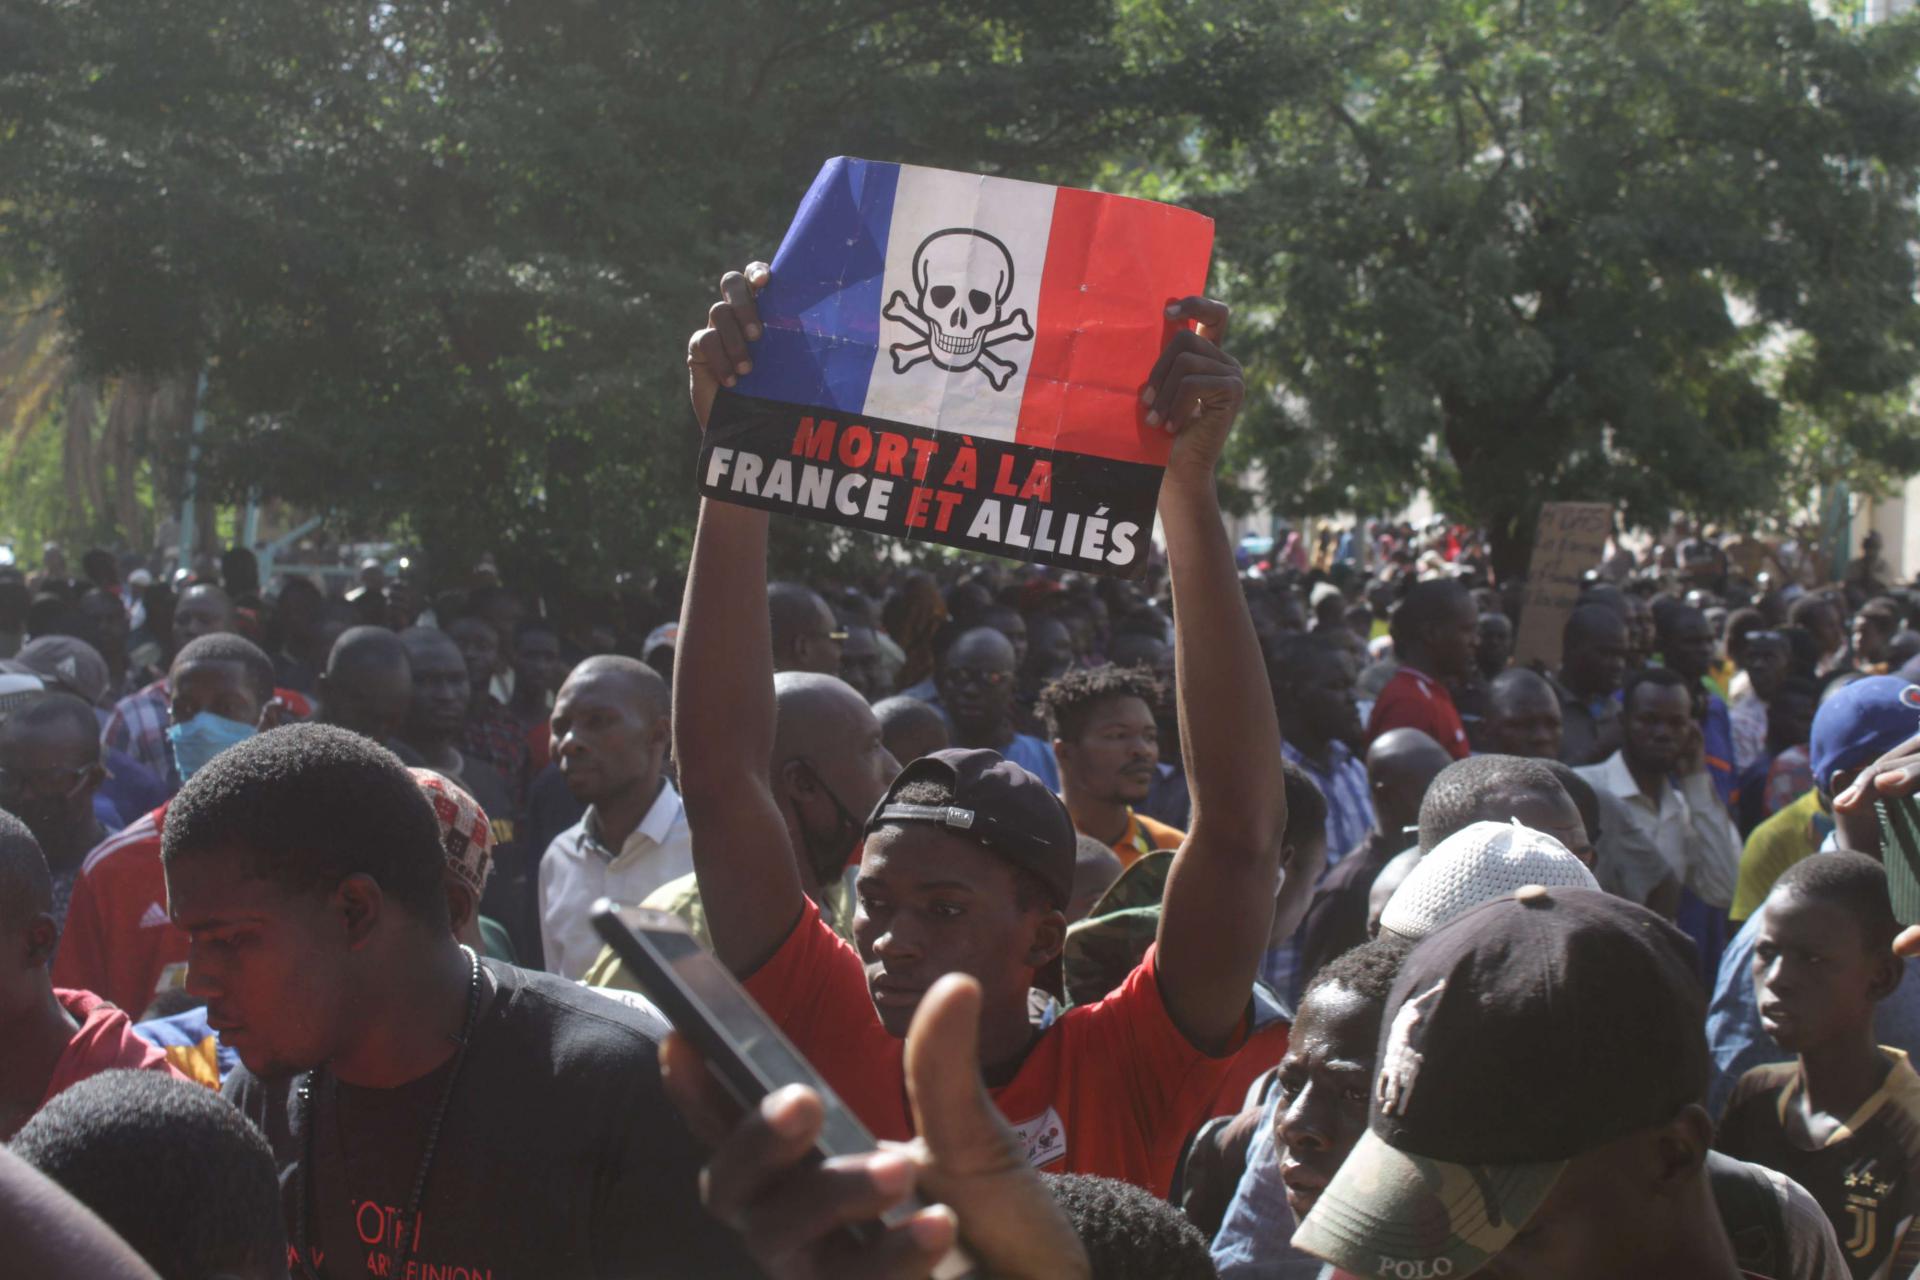 تقرير أممي يحمل باريس المسؤولية عن قتل مدنيين في مالي وسط موجة عداء غير مسبوقة لفرنسا